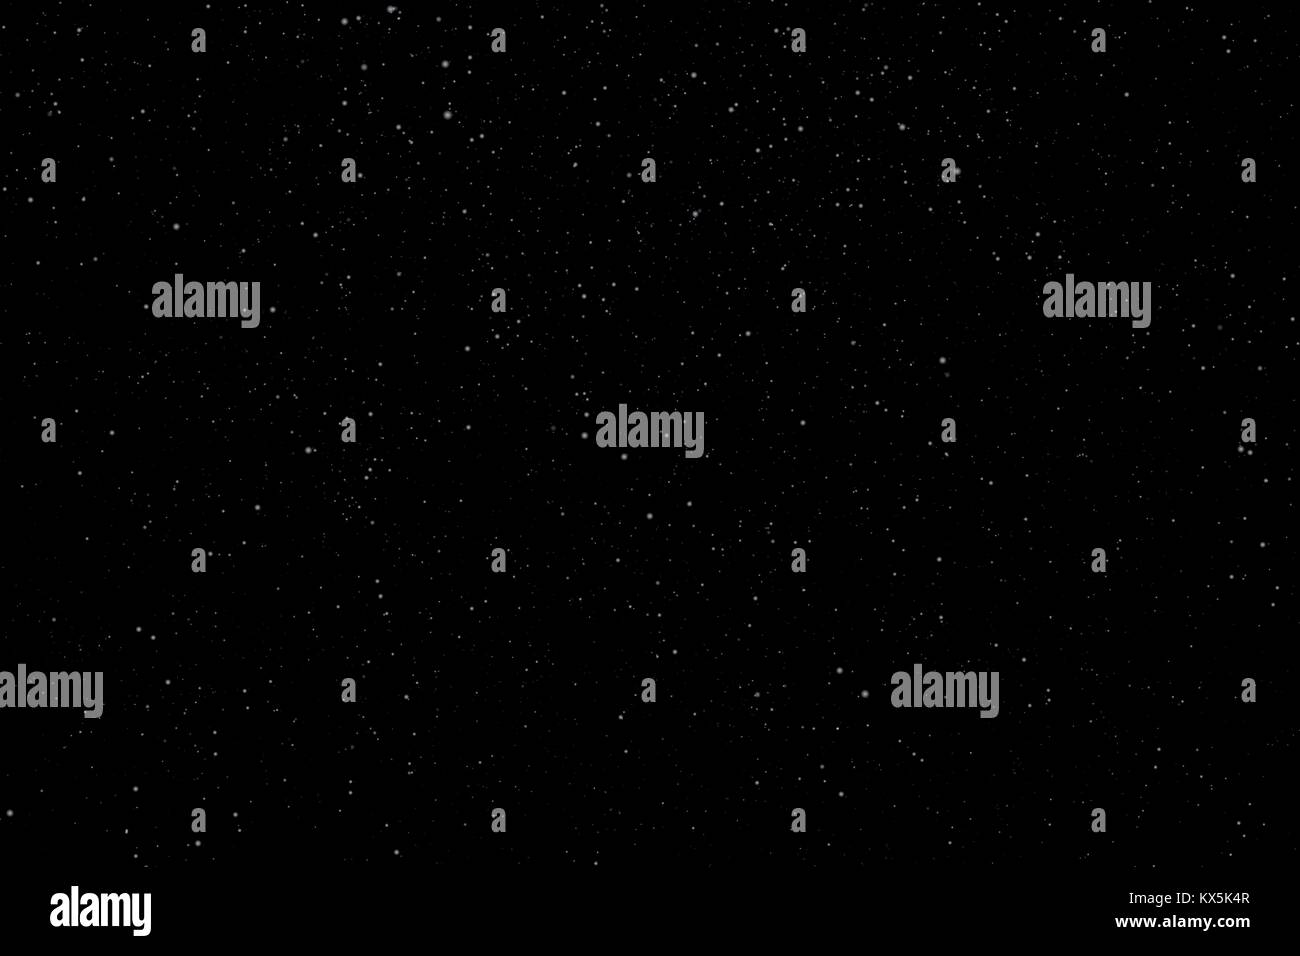 Nacht Sternenhimmel mit Sternen und Planeten geeignet als Hintergrund - Vektor Stock Vektor